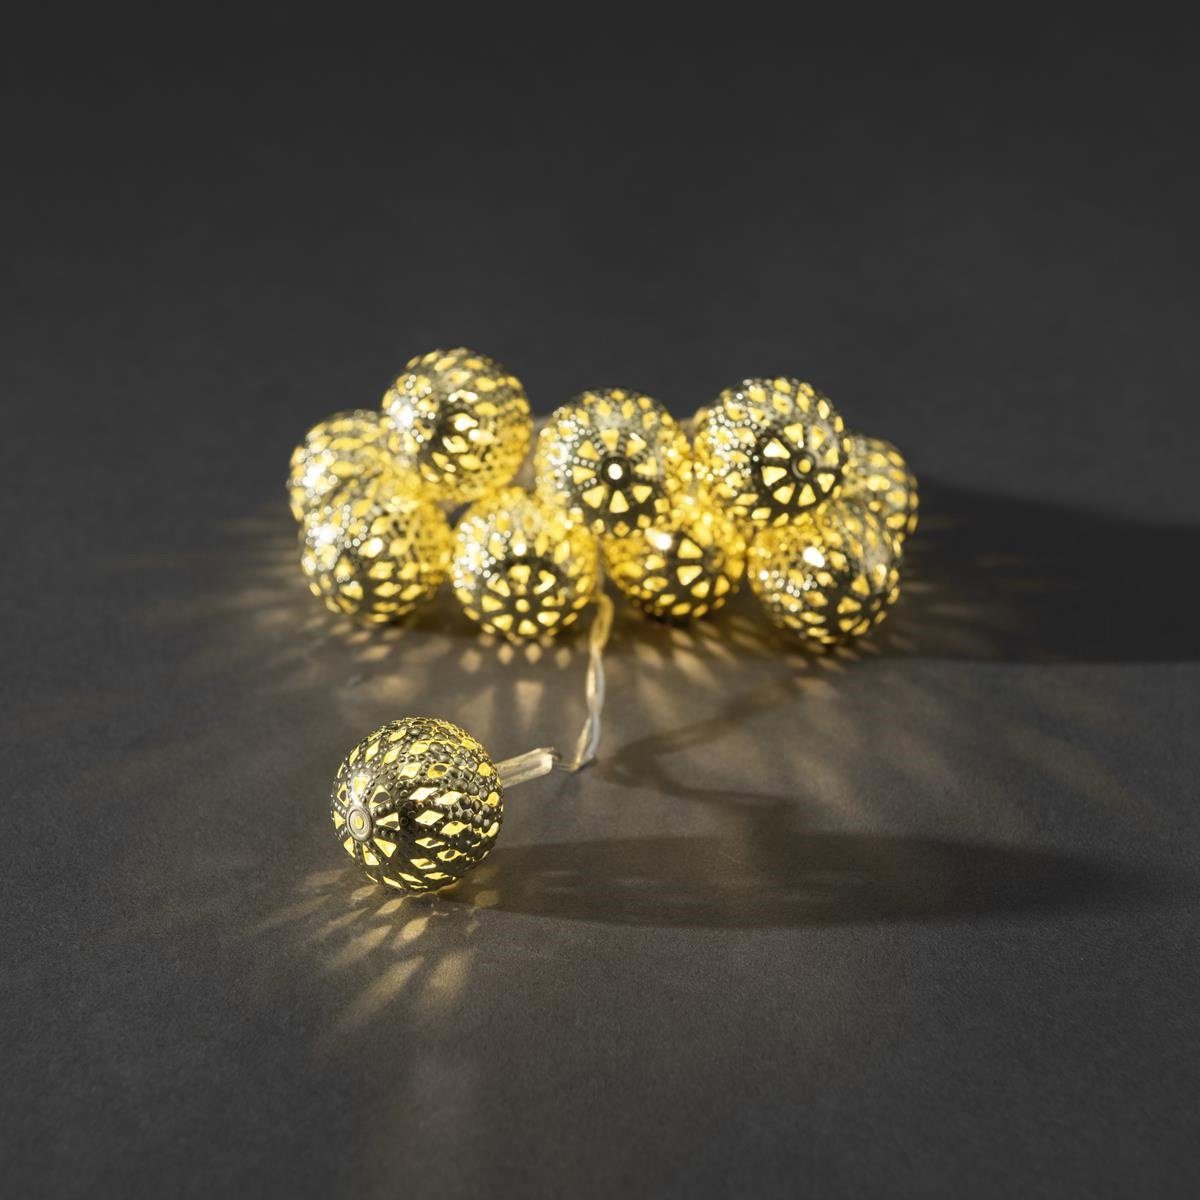 10-flammig gold, 2,5cm Bälle kleine Metallkugeln Innen Ball Batterie LED-Lichterkette Deko 10 KONSTSMIDE